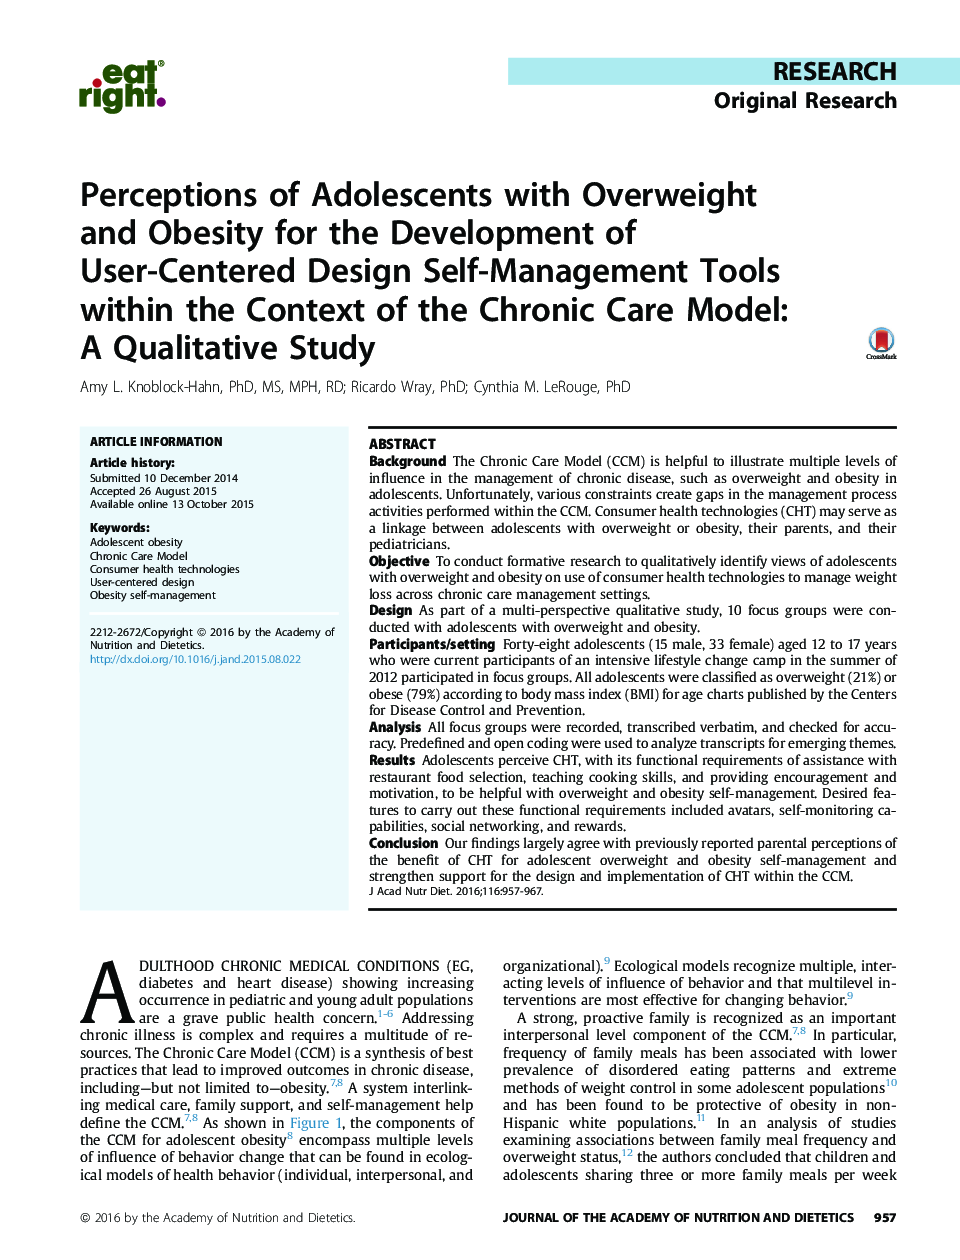 ادراک نوجوانان با اضافه وزن و چاقی برای توسعه ابزارهای خودمراقبتی طراحی کاربرمحور در قالب مدل مراقبت های مزمن: یک مطالعه کیفی